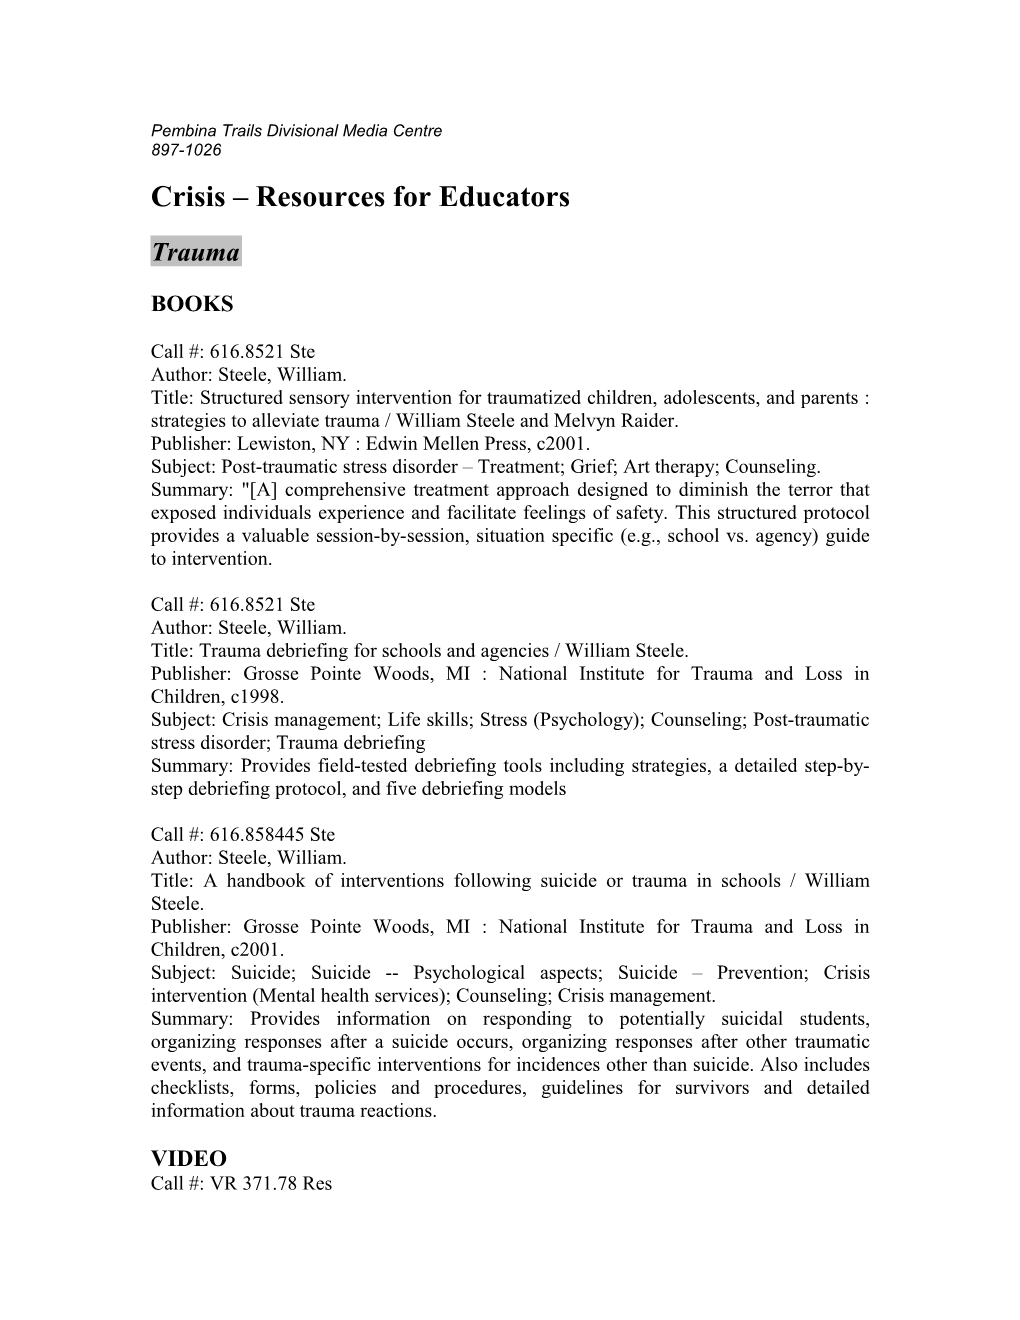 Crisis Resources for Educators